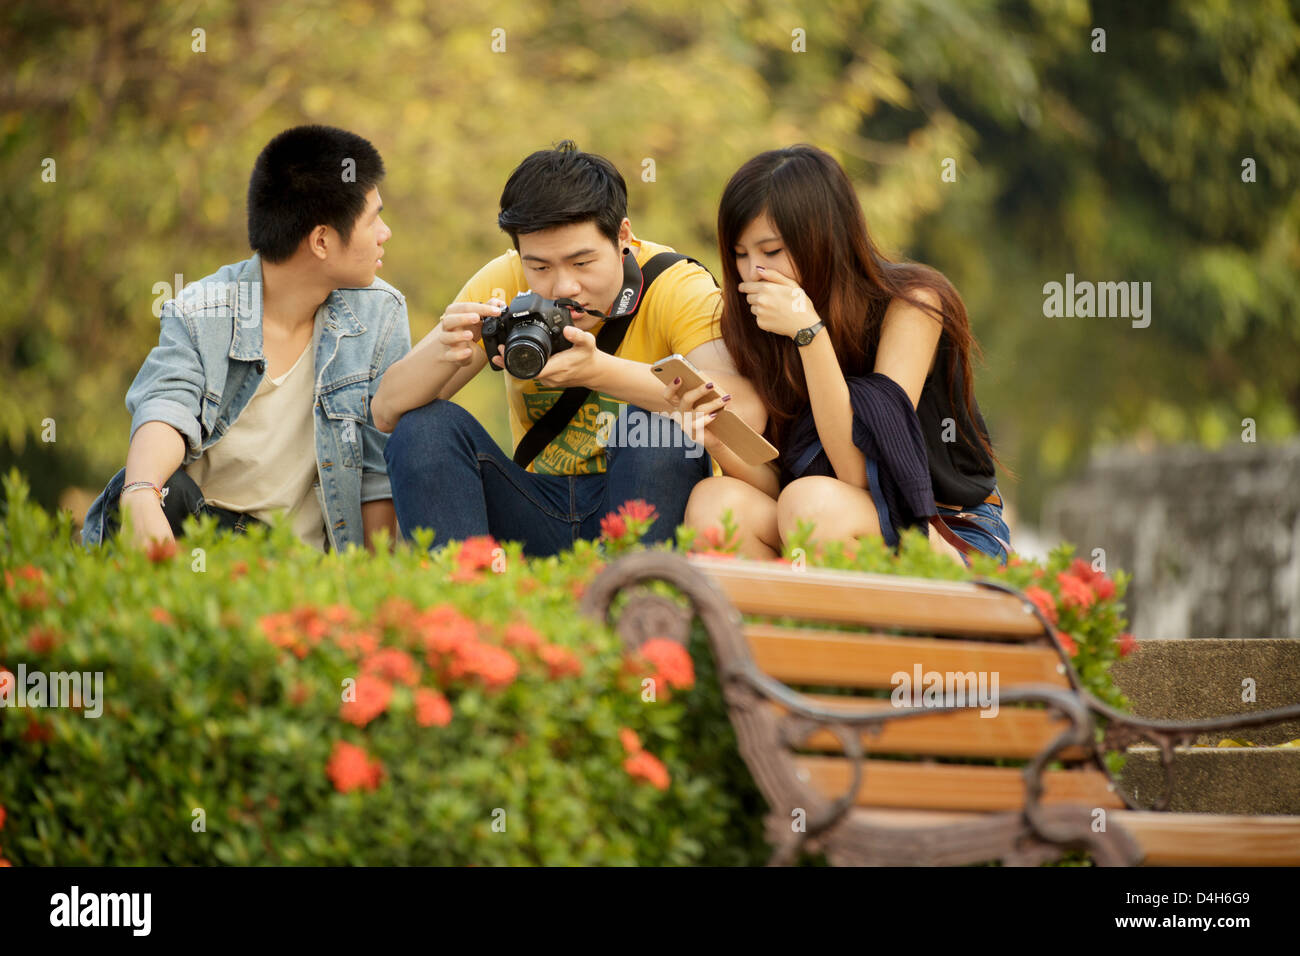 Drei Leute sitzen im Park, sieht man die Fotos vor der Kamera, Bangkok, Thailand Stockfoto